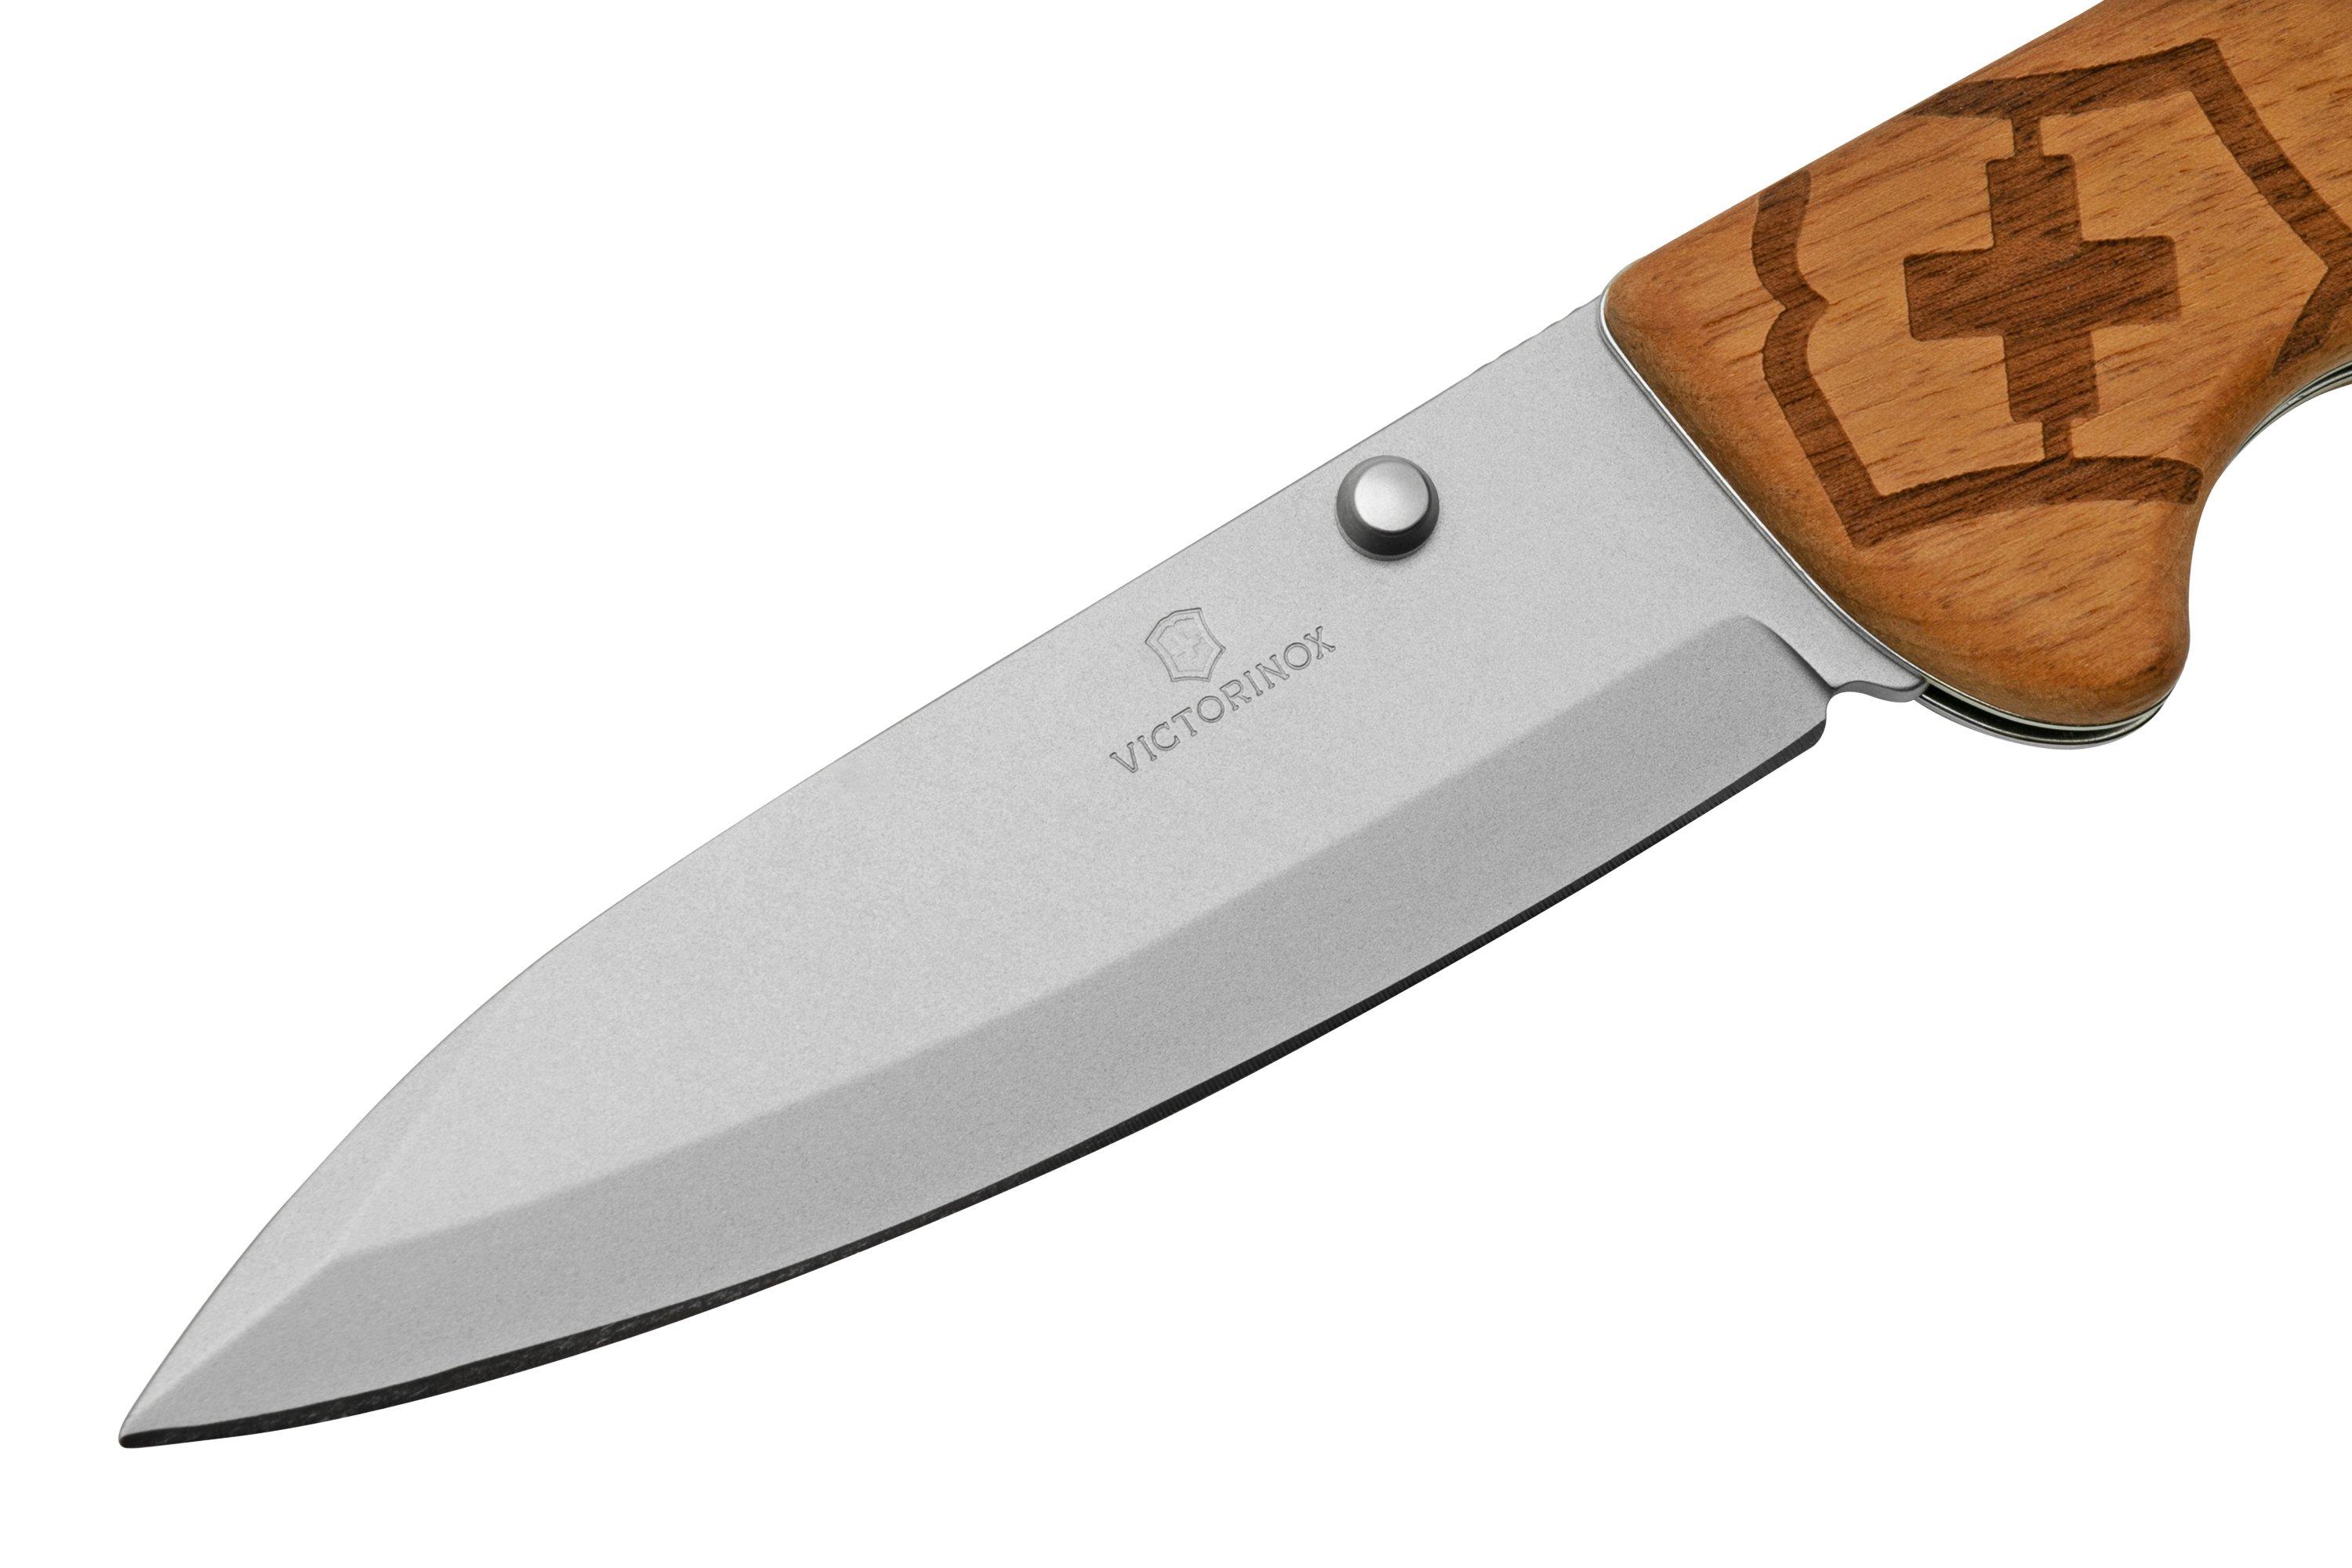 VICTORINOX Pocket knife EVOKE in brown